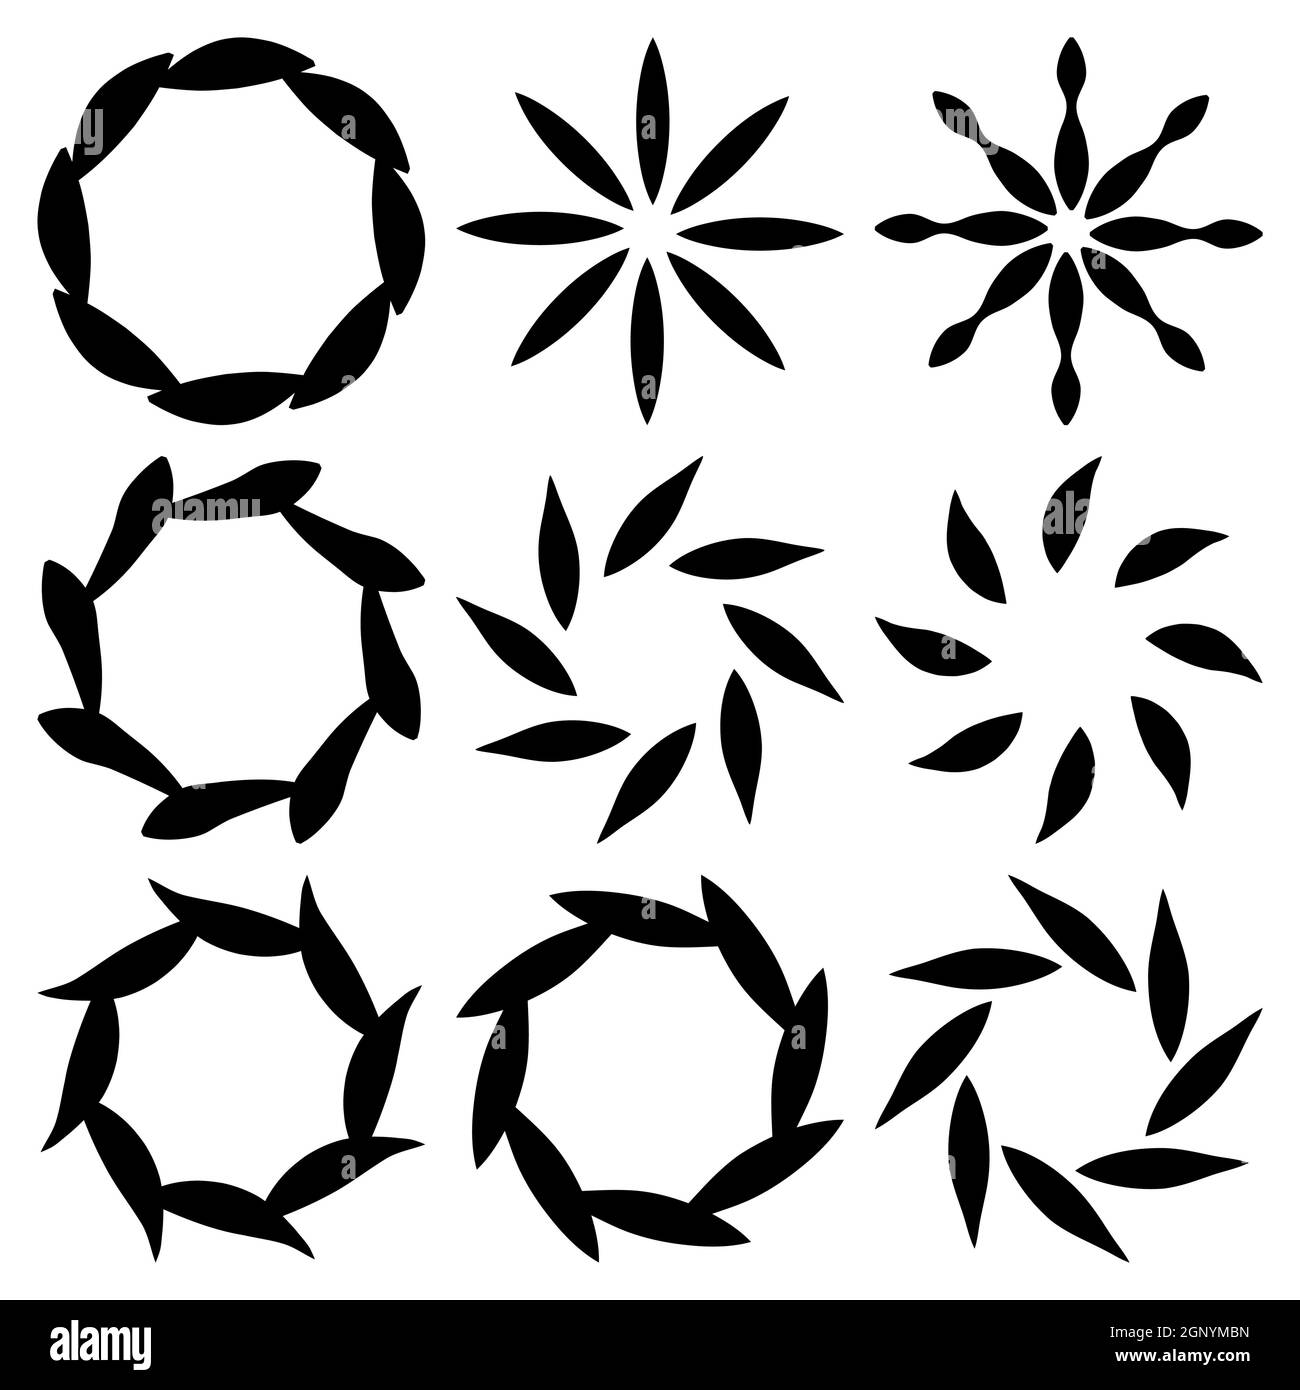 Rundes Design-Elemente-Set. Sammlung von floralen einfachen Rahmen oder Border Kranz. Vektorkreivorlage auf weißem Hintergrund isoliert. Stock Vektor